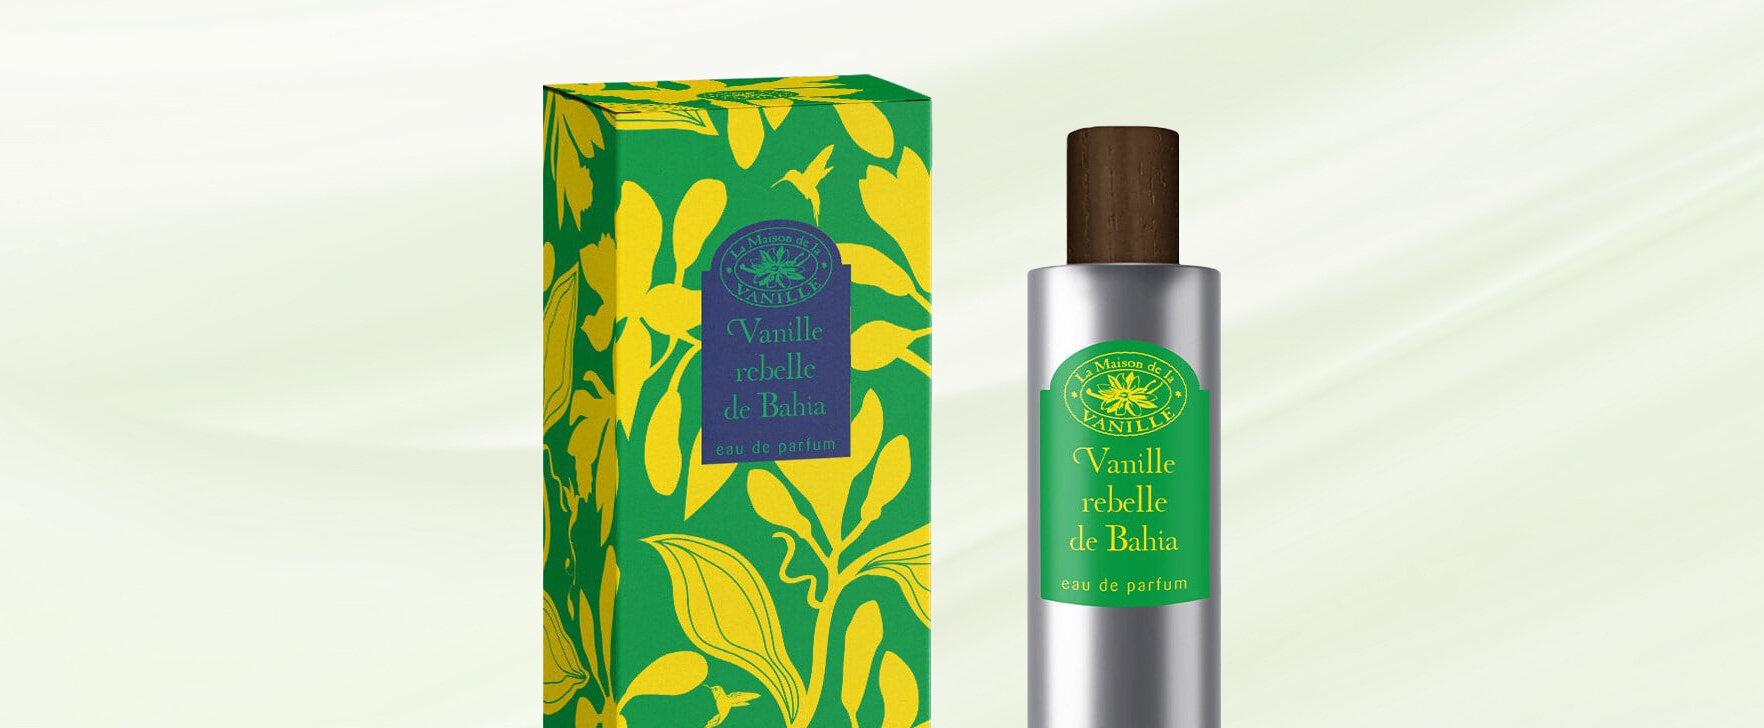 Das neue Eau de Parfum „Vanille rebelle de Bahia“ von La Maison de la Vanille: Eine Ode an die Freiheit